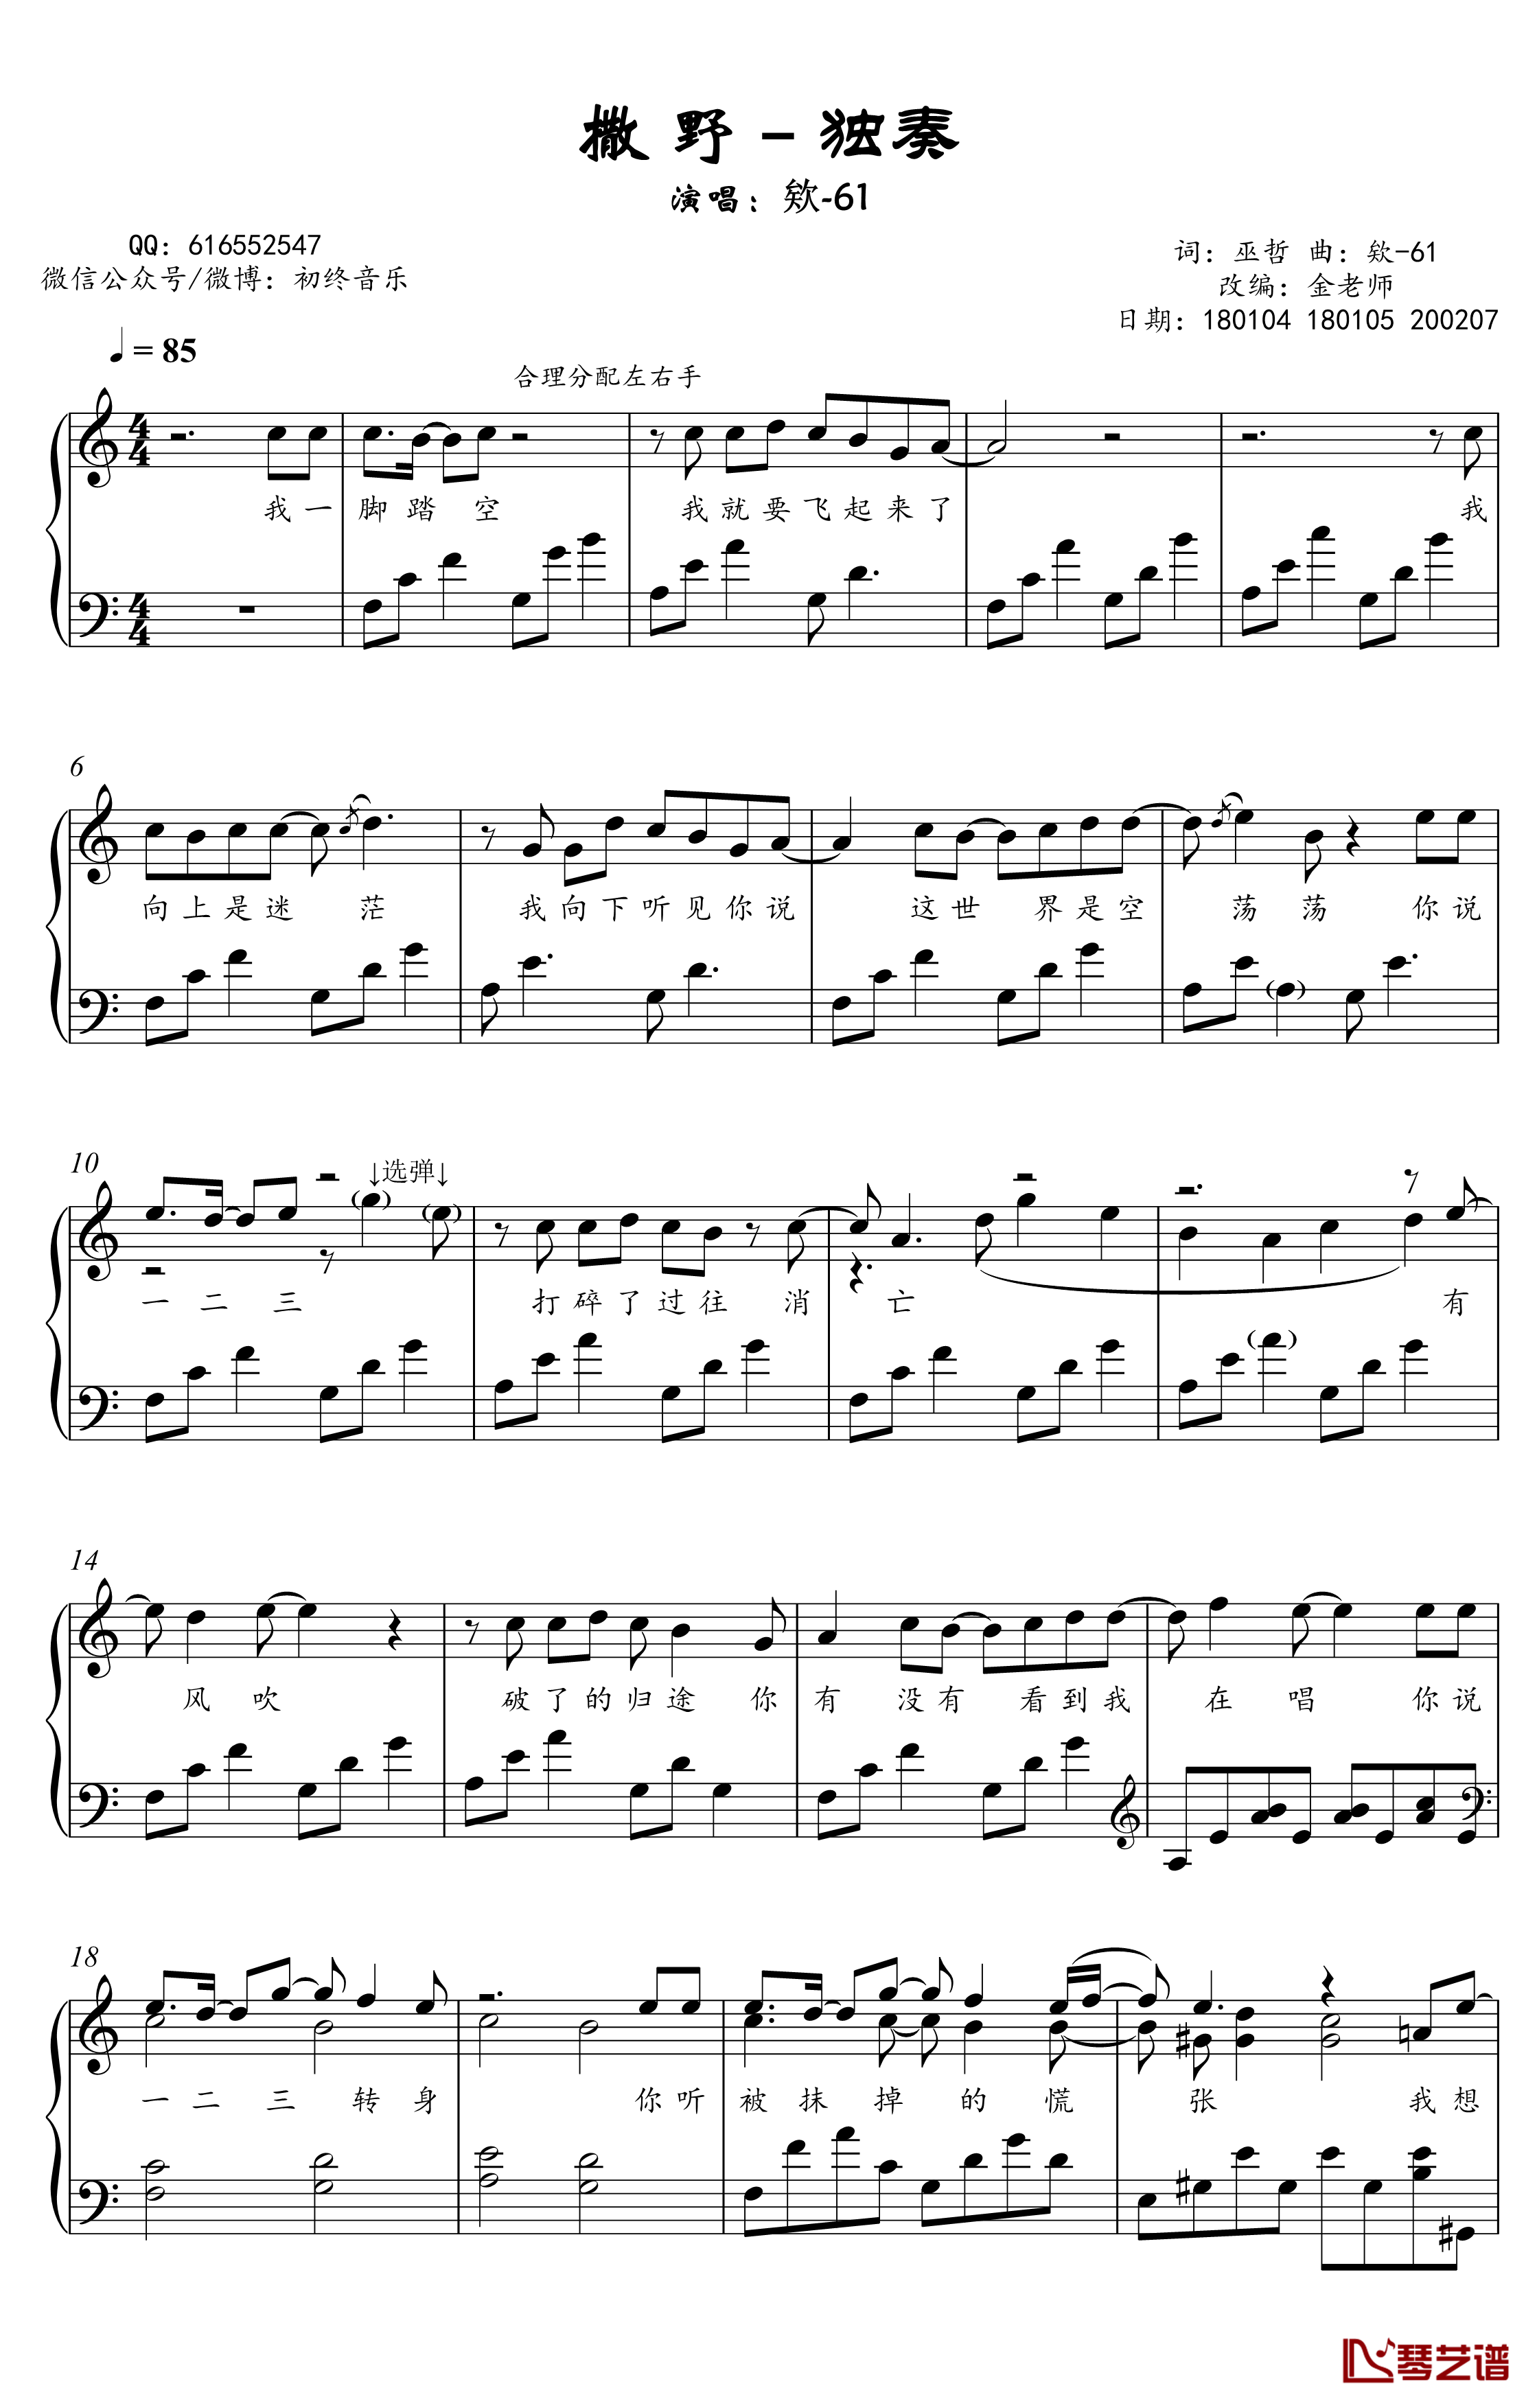 撒野钢琴谱-金老师独奏谱2002072